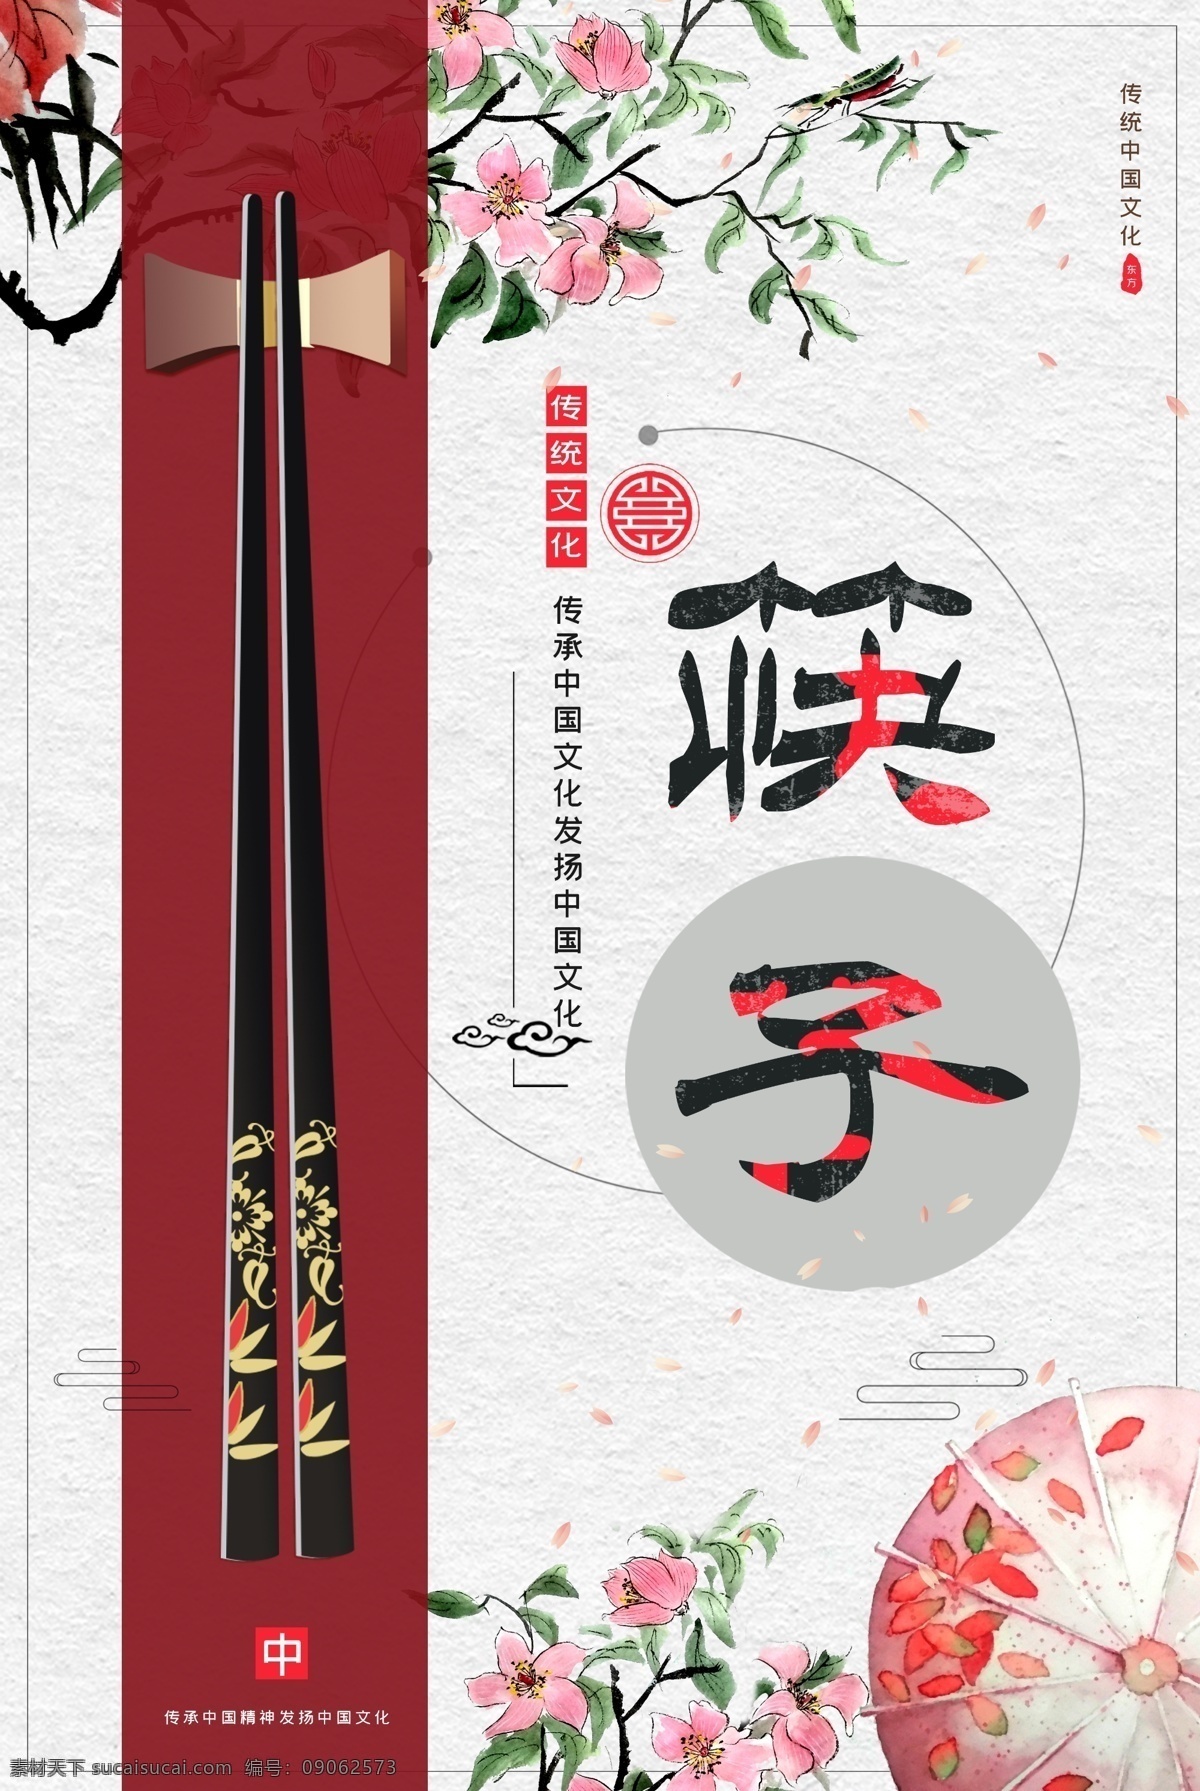 筷子文化 食 餐馆 餐饮 节约 用量 卫生筷 传承 传统 传递 饮食